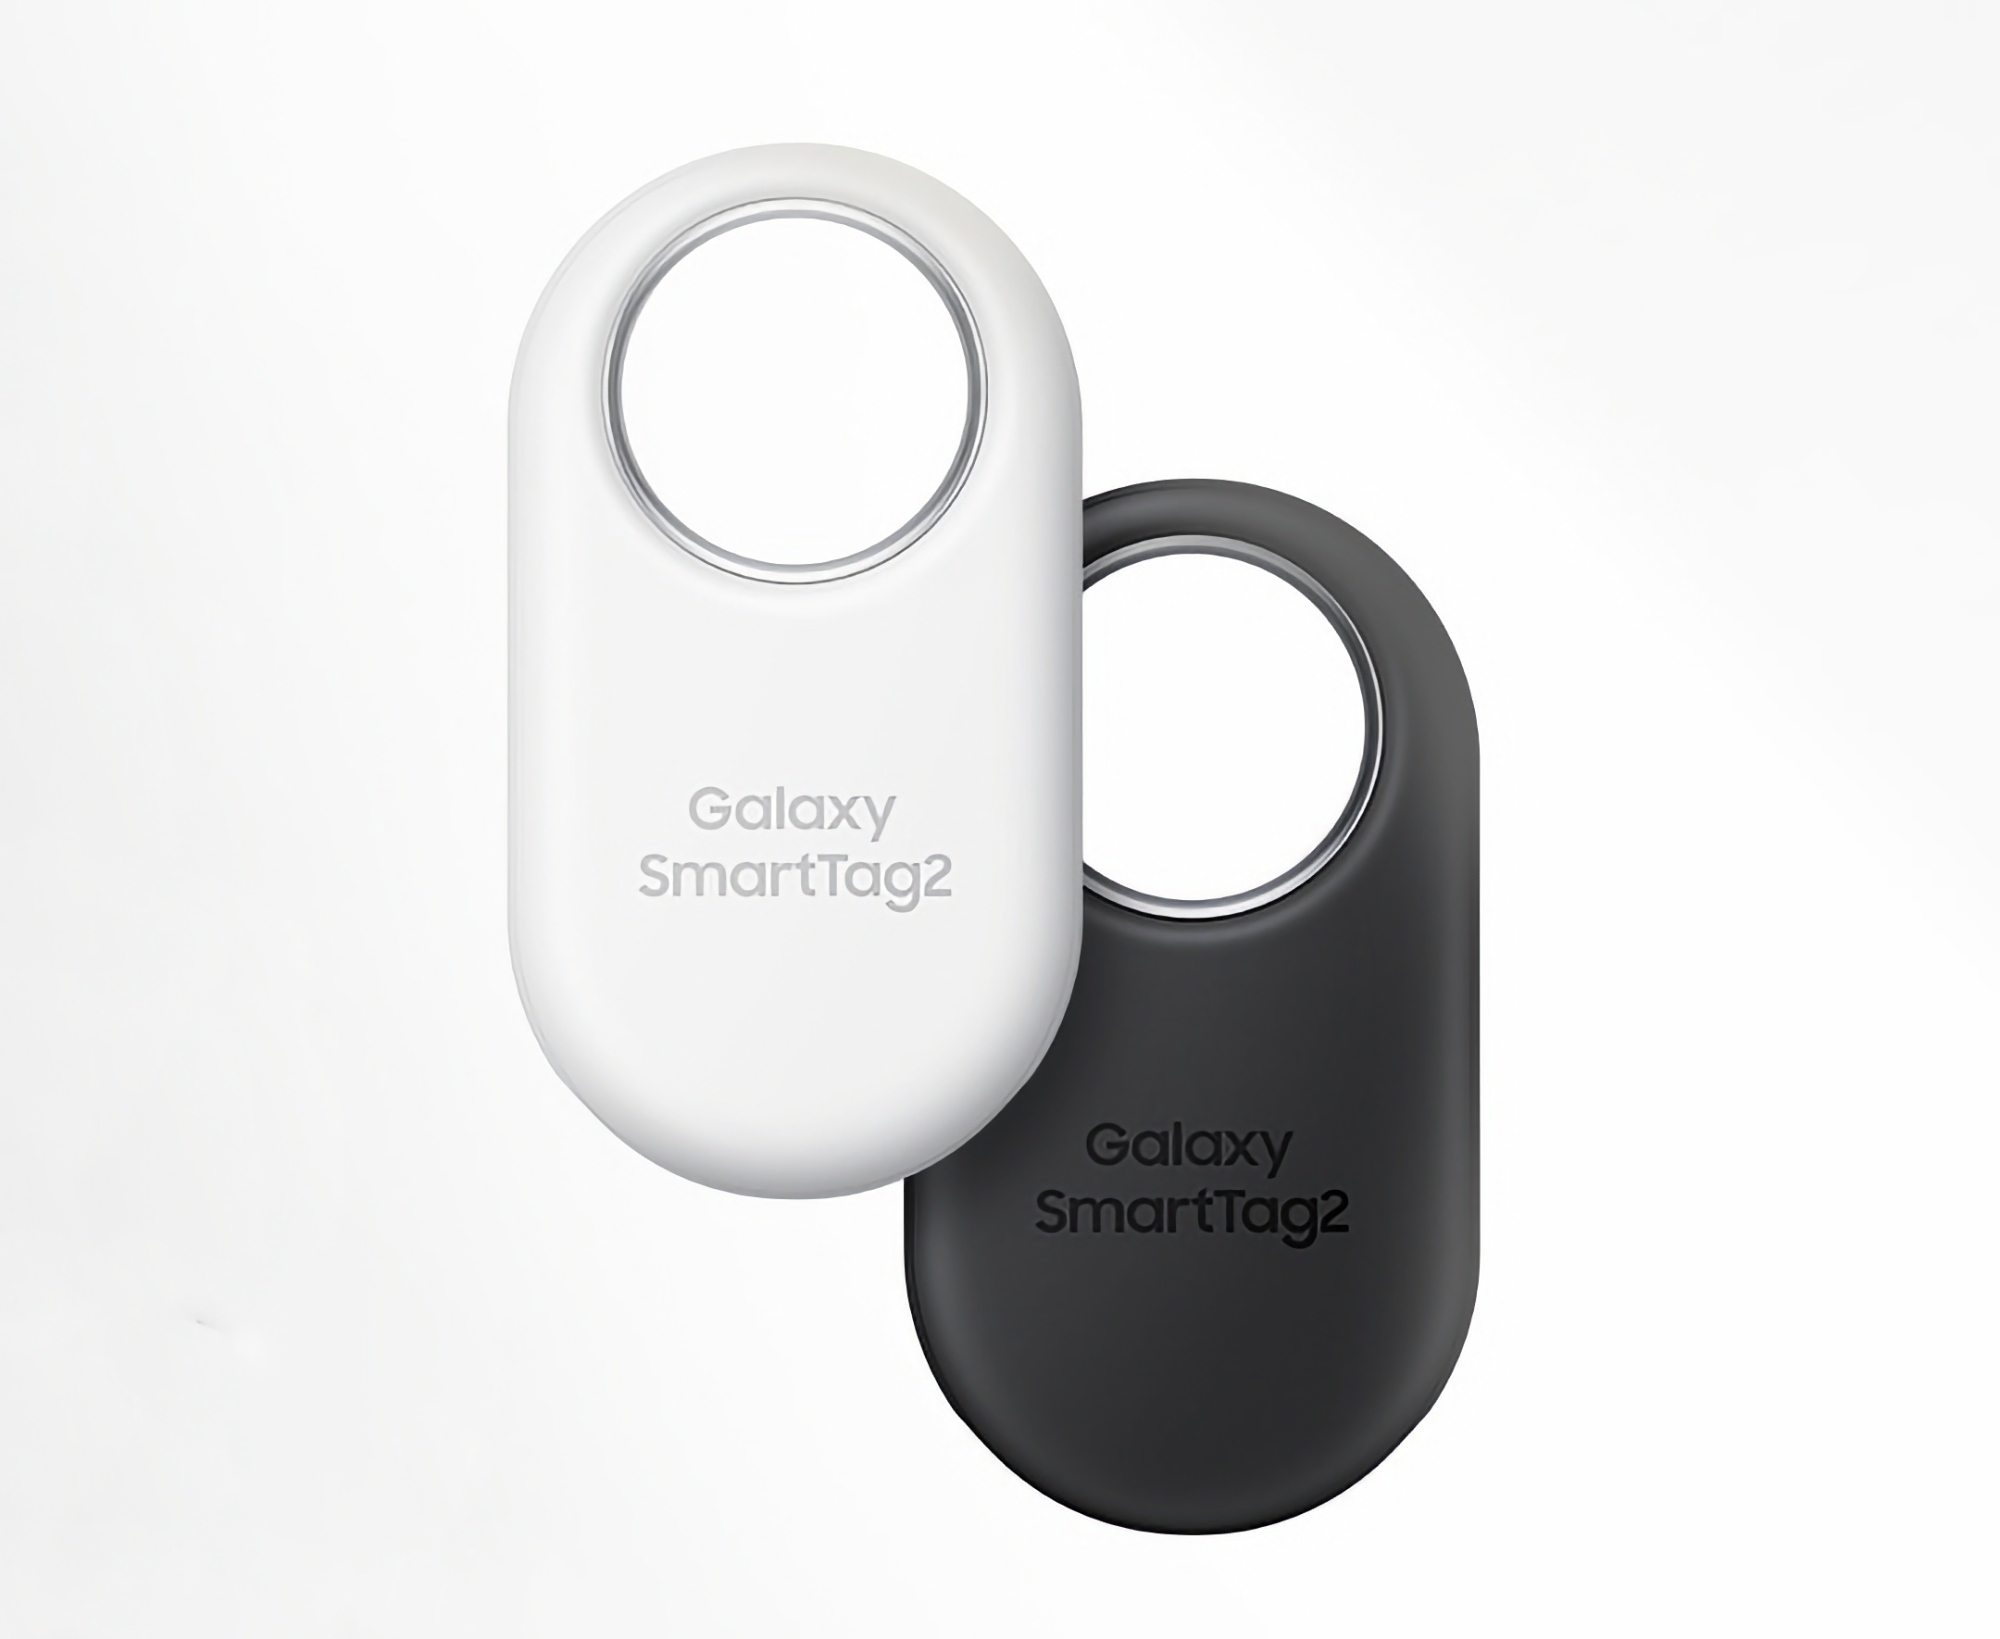 Samsung Galaxy SmartTag 2 można kupić na Amazonie w promocyjnej cenie